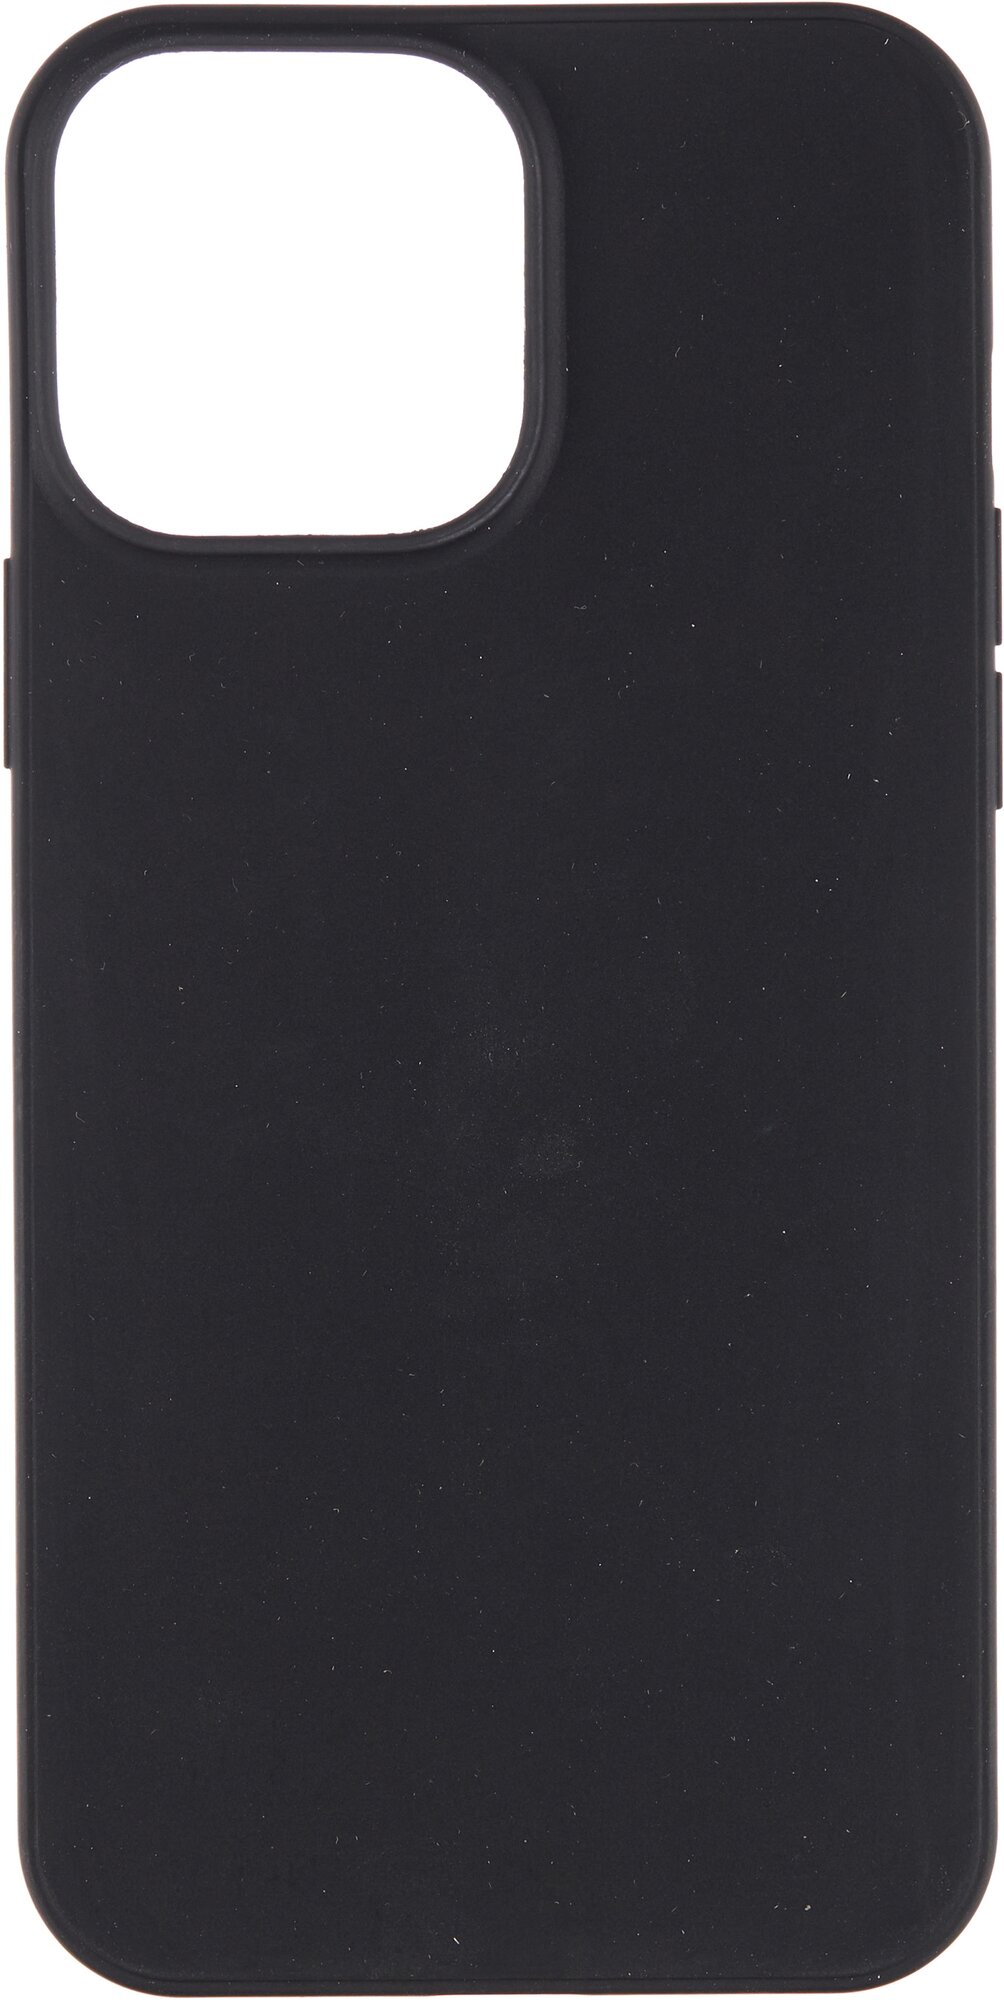 Чехол-крышка Gresso для Apple iPhone 13 Pro Max, термополиуретан, черный - фото №1